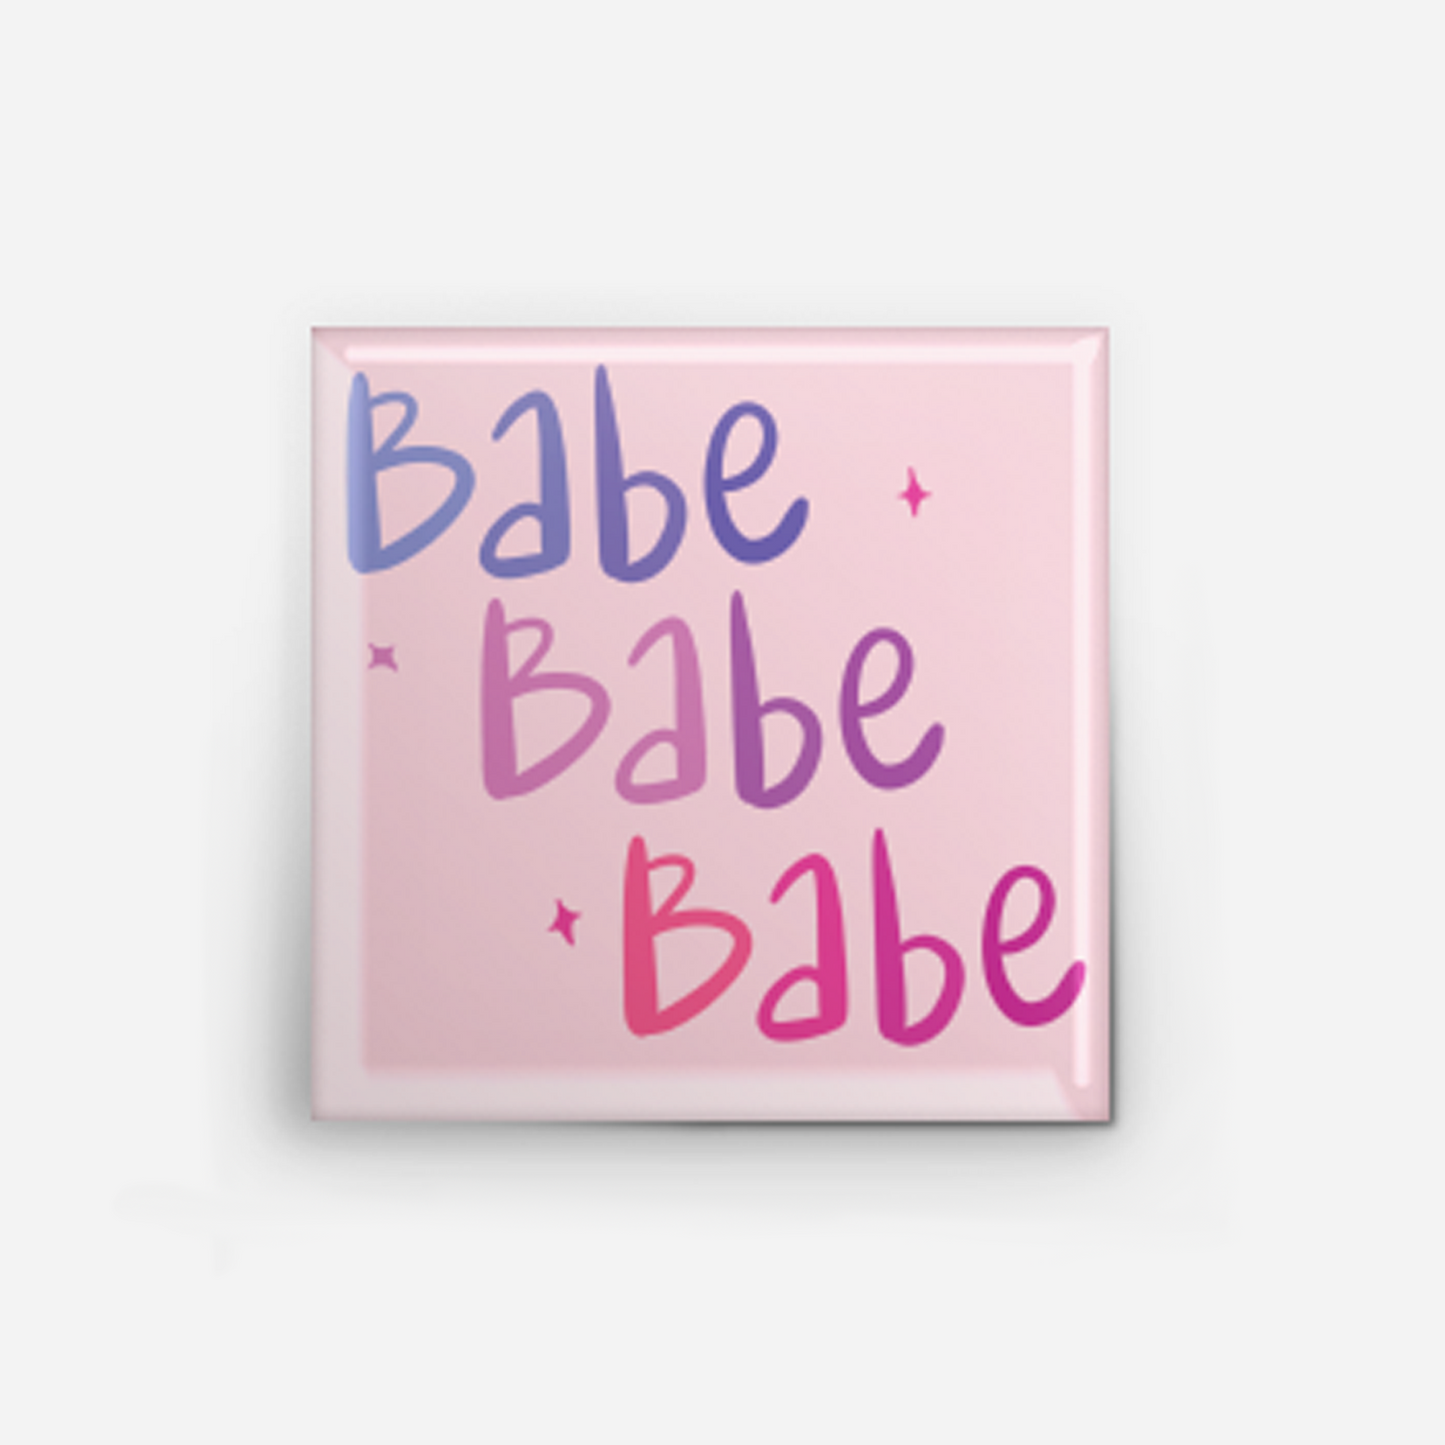 Babe Babe Babe Pinback Button